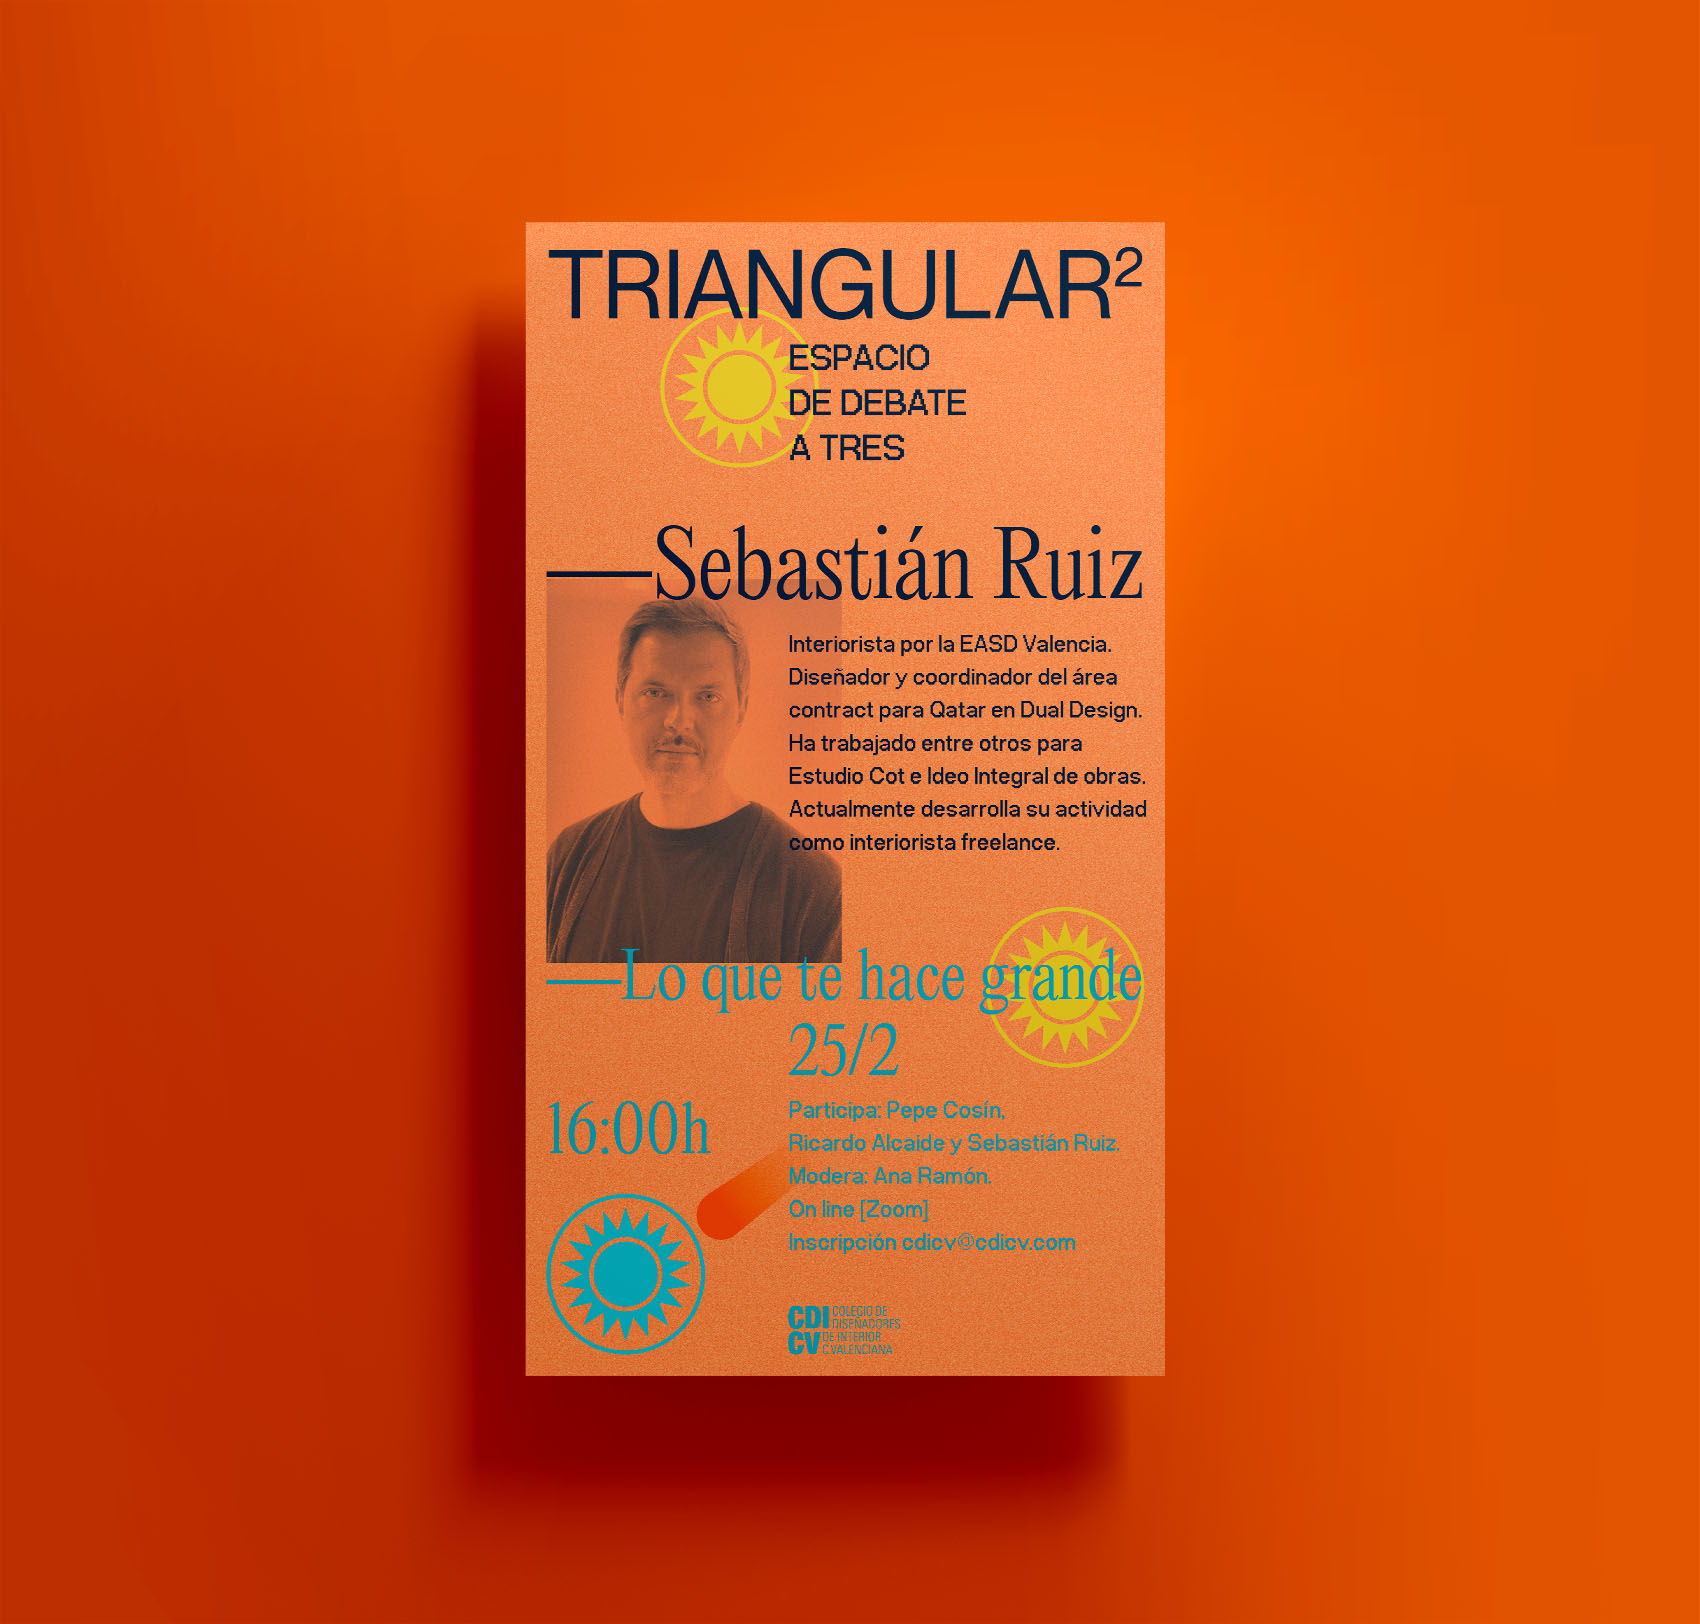 Proyecto de diseño gráfico para el espacio de debate Triangular promovido por el Colegio de Diseñadores de Interior de la Comunidad Valenciana